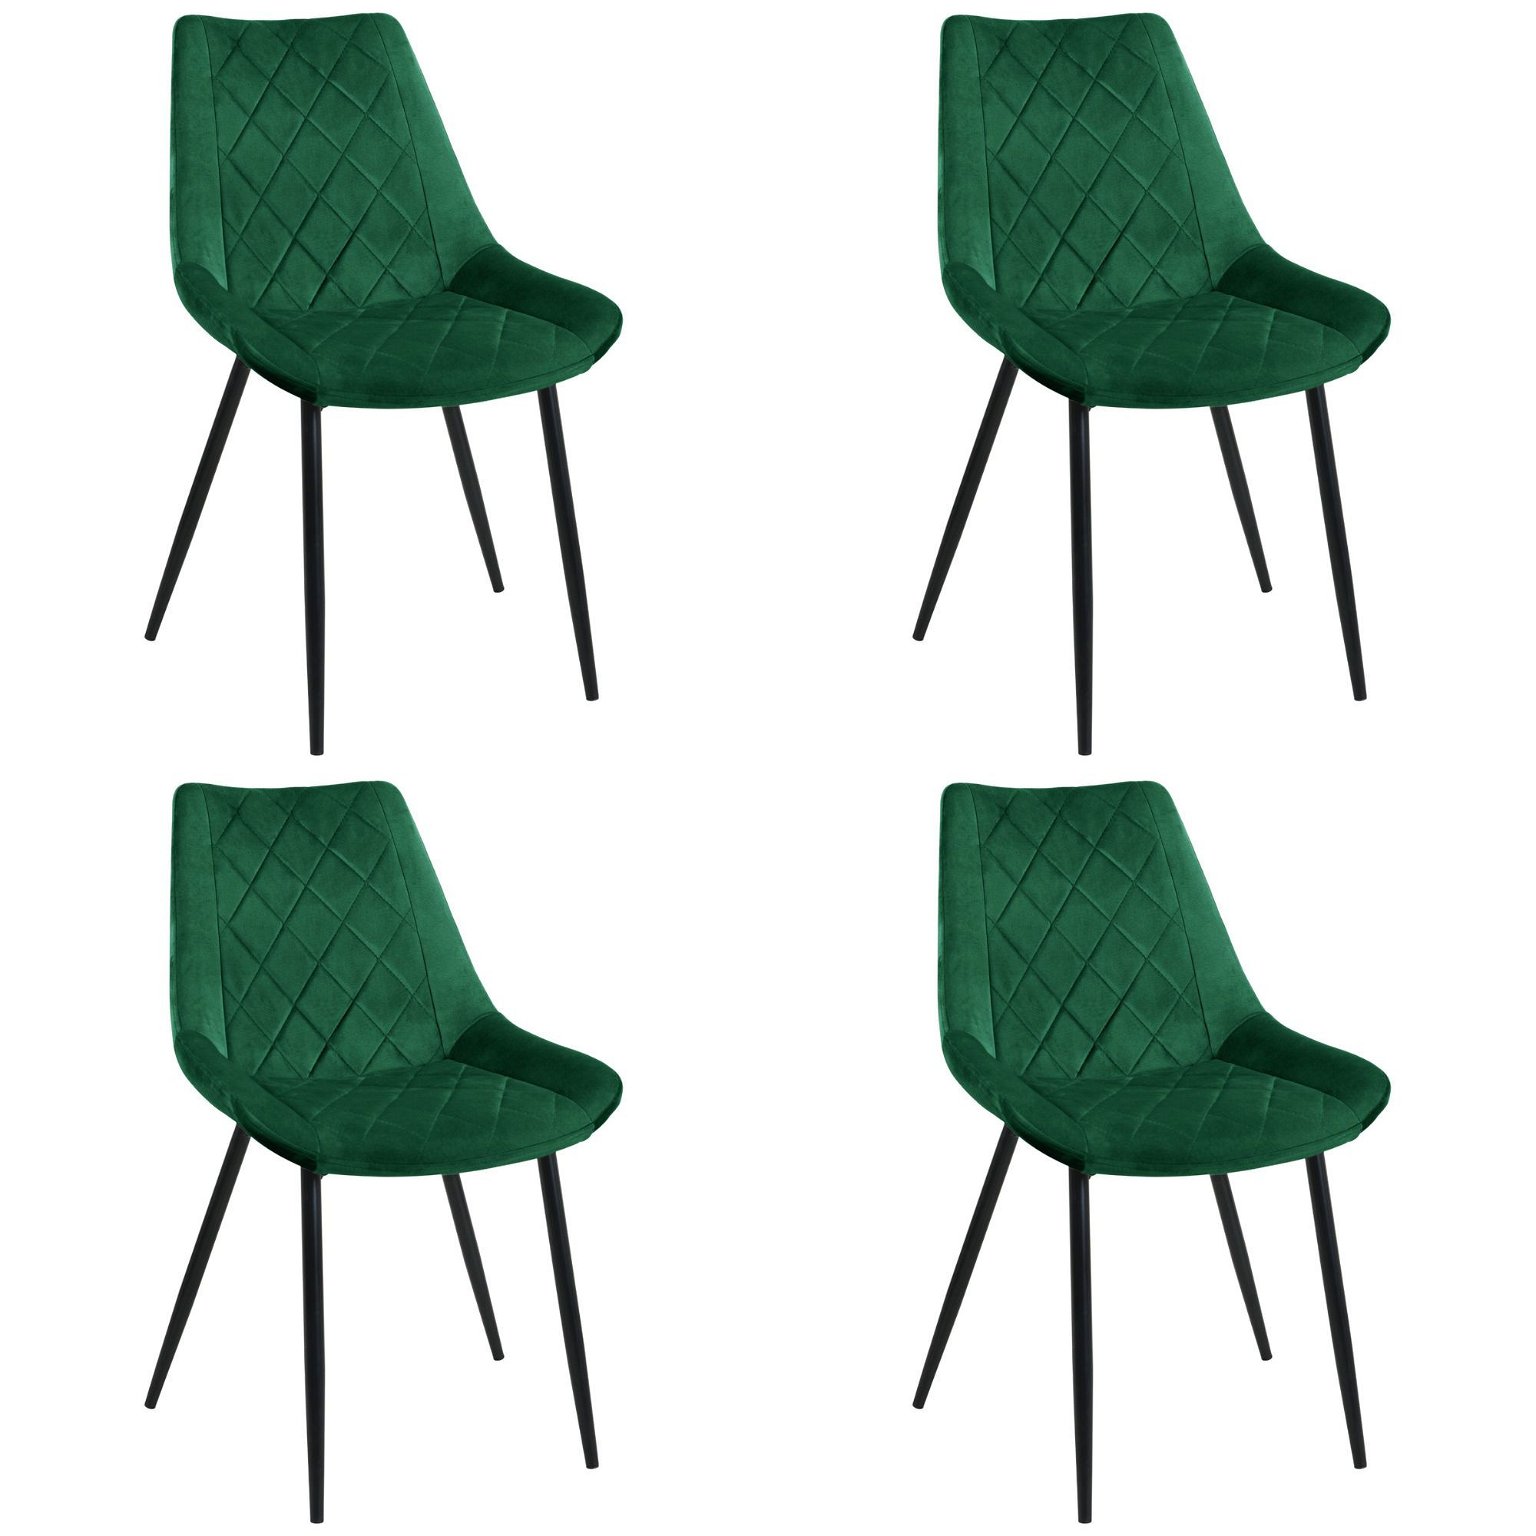 4-ių kėdžių komplektas SJ.0488, žalia